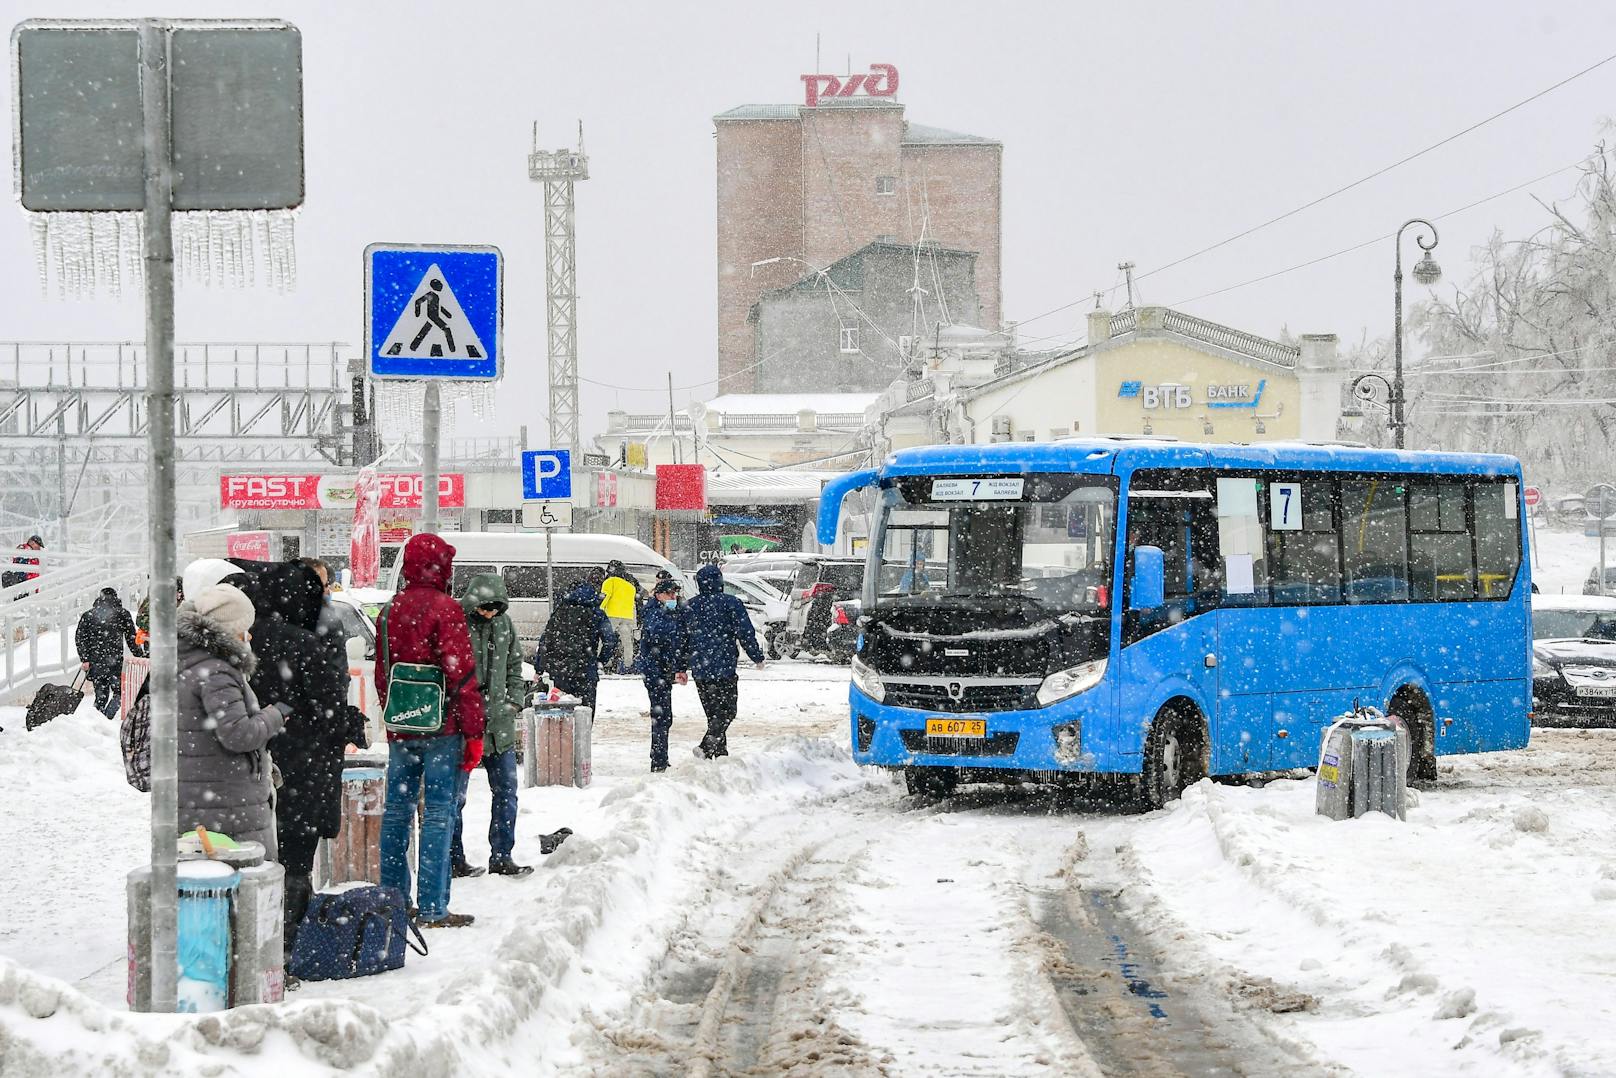 Gefrierender Regen hat am 19. November Wladiwostok lahmgelegt. Strom- und Warmwasserversorgung sind zusammengebrochen, die Regierung hat den Notstand ausgerufen.